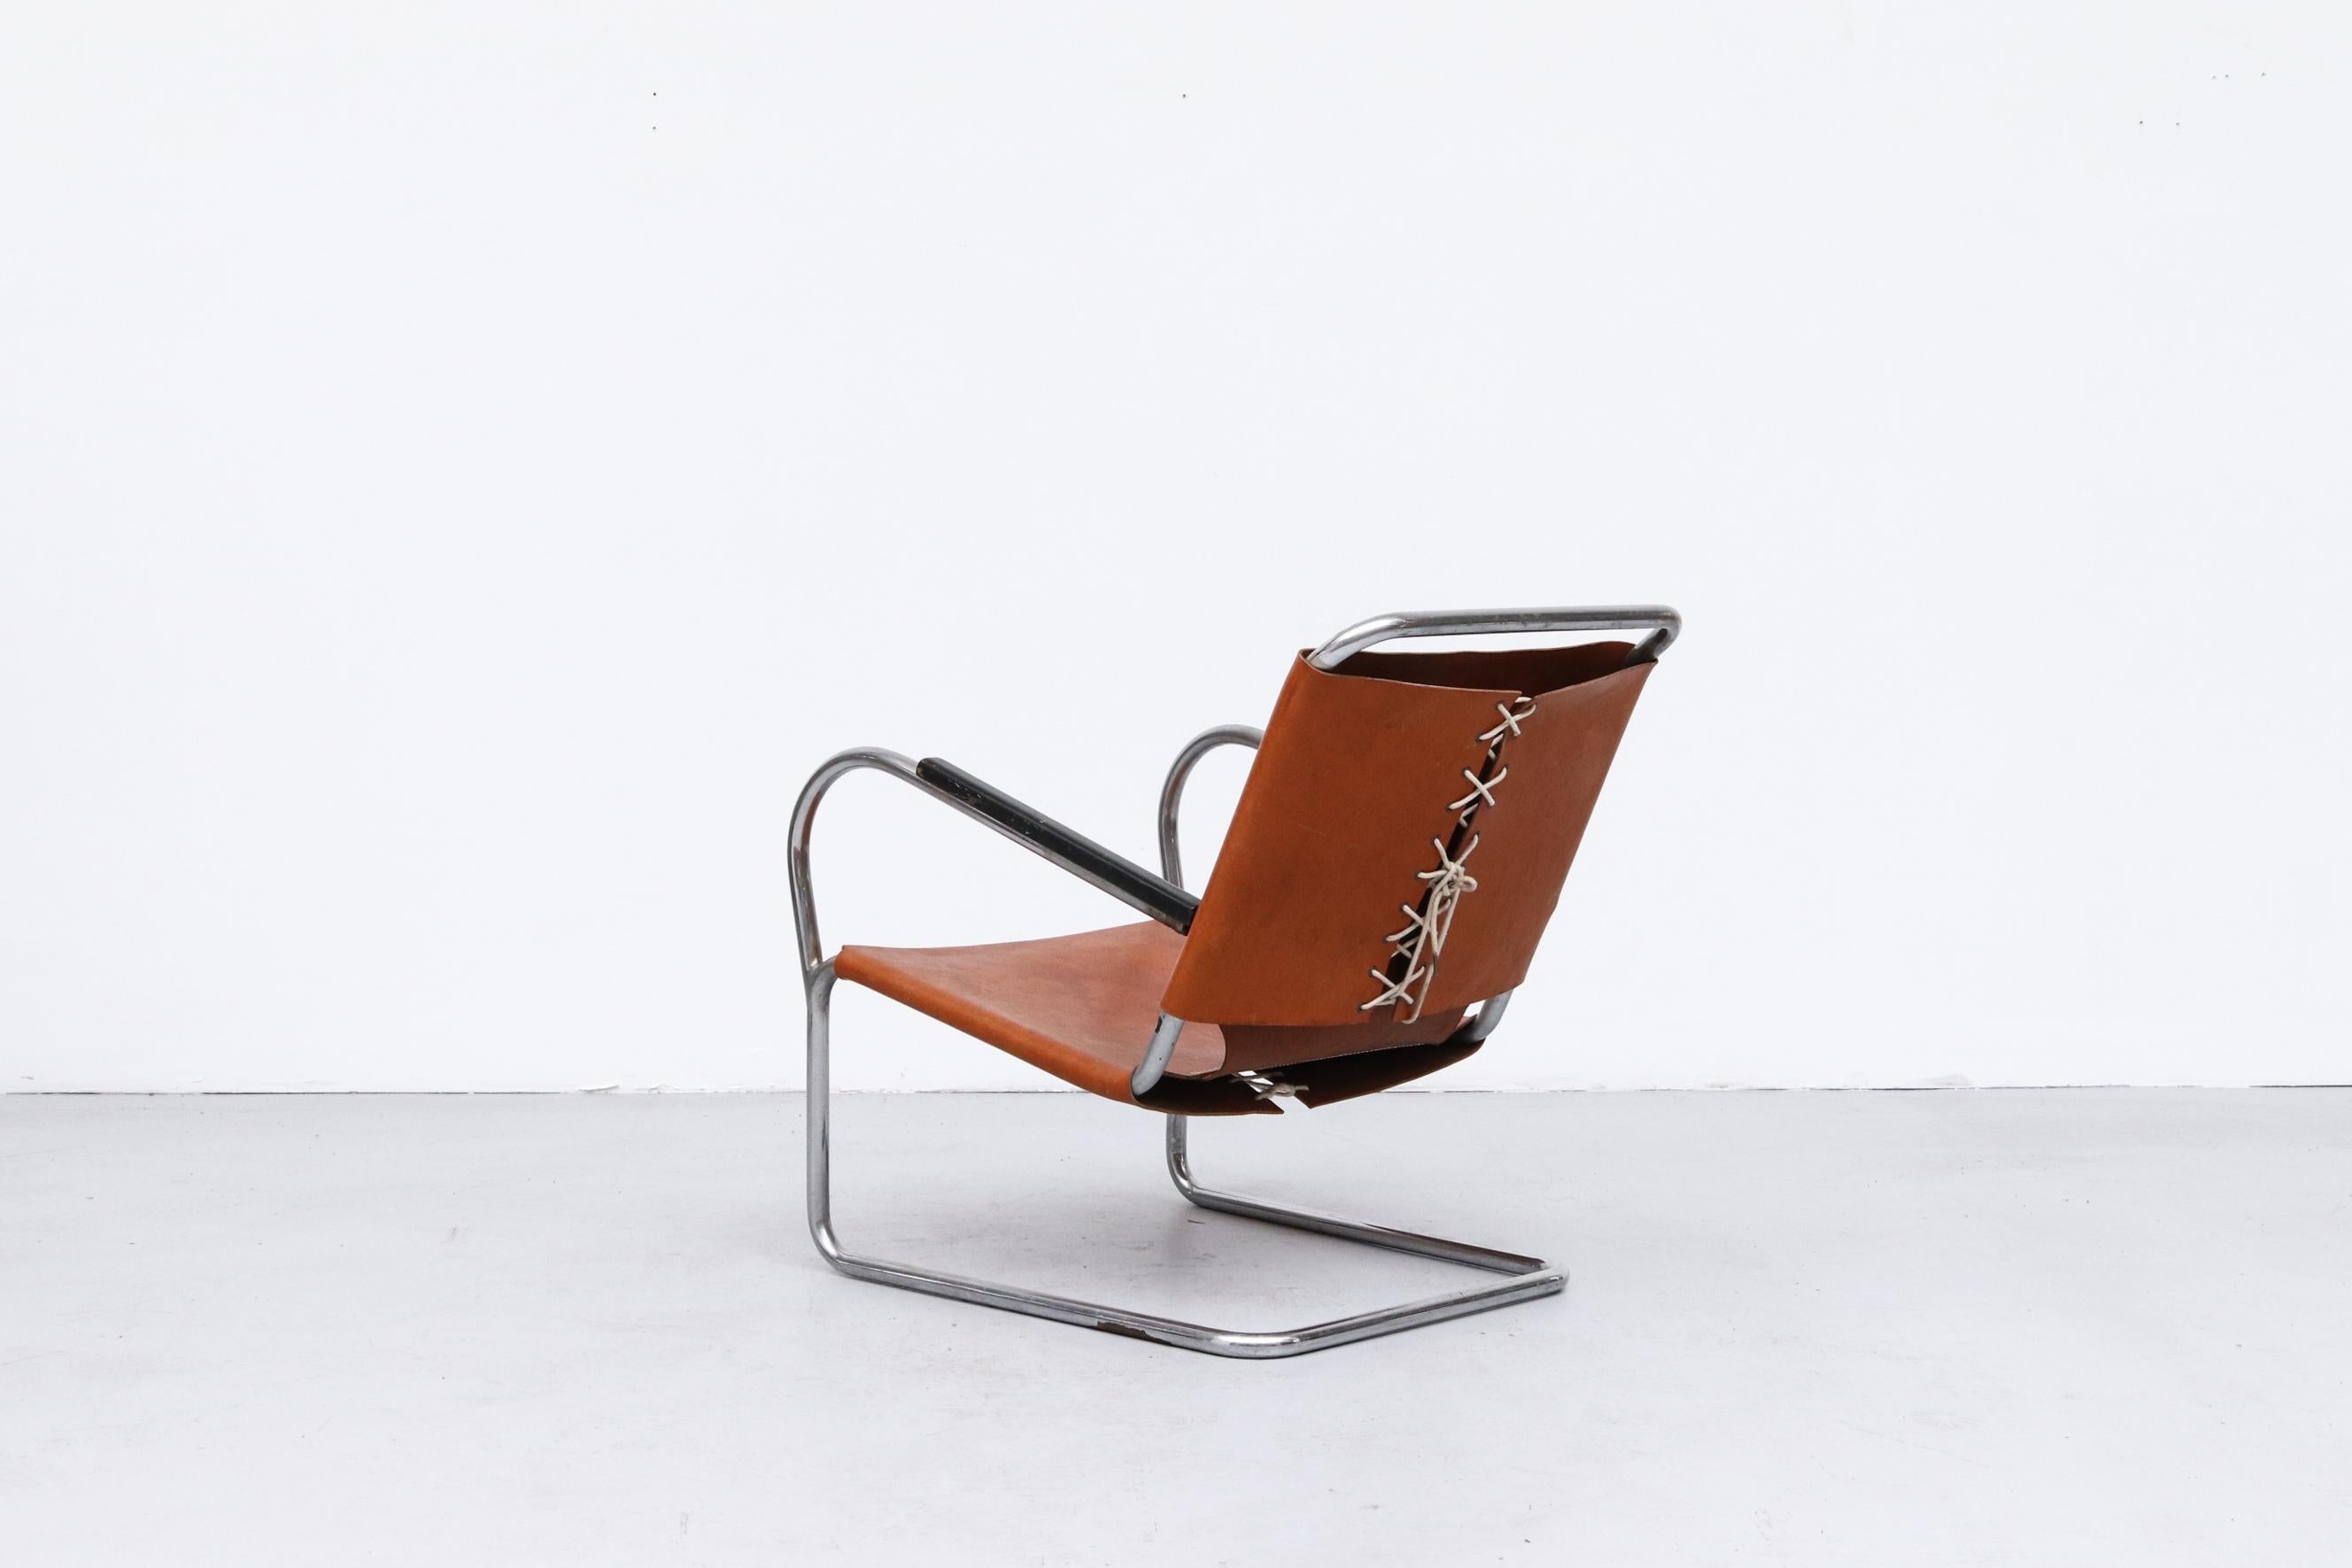 Mid-20th Century Bas Van Pelt Leather and Chrome Tubular Lounge Chair